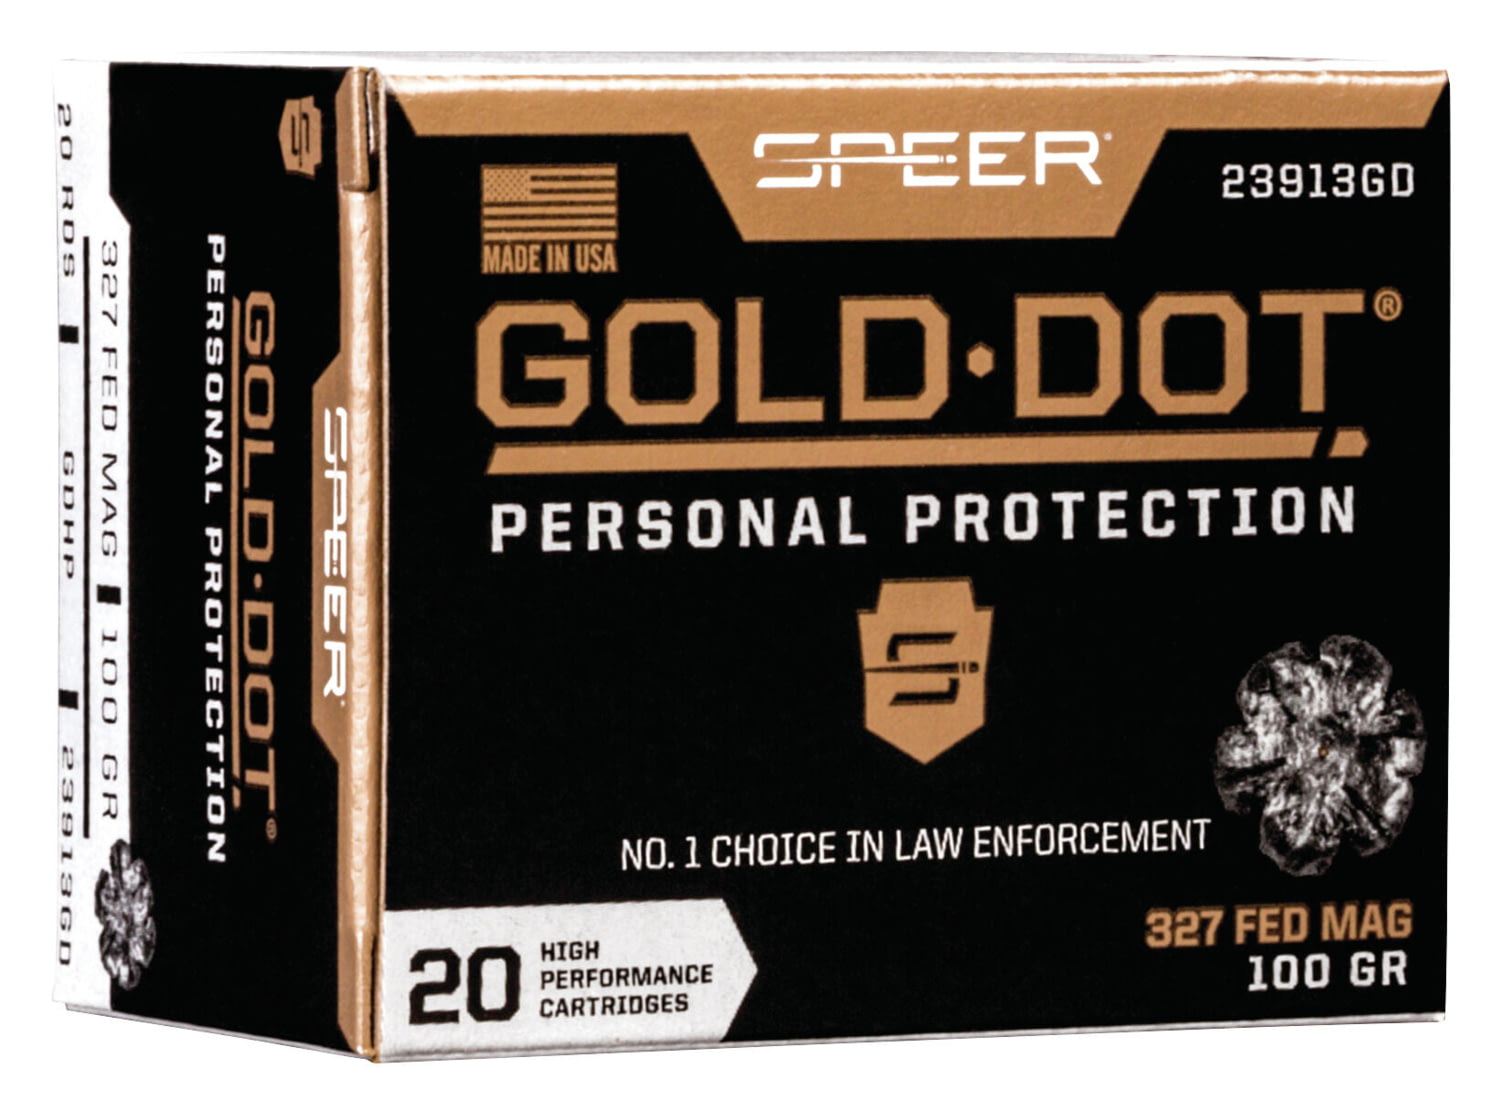 Speer Gold Dot .38 Special 100 grain Gold Dot Hollow Point Centerfire Pistol Ammunition